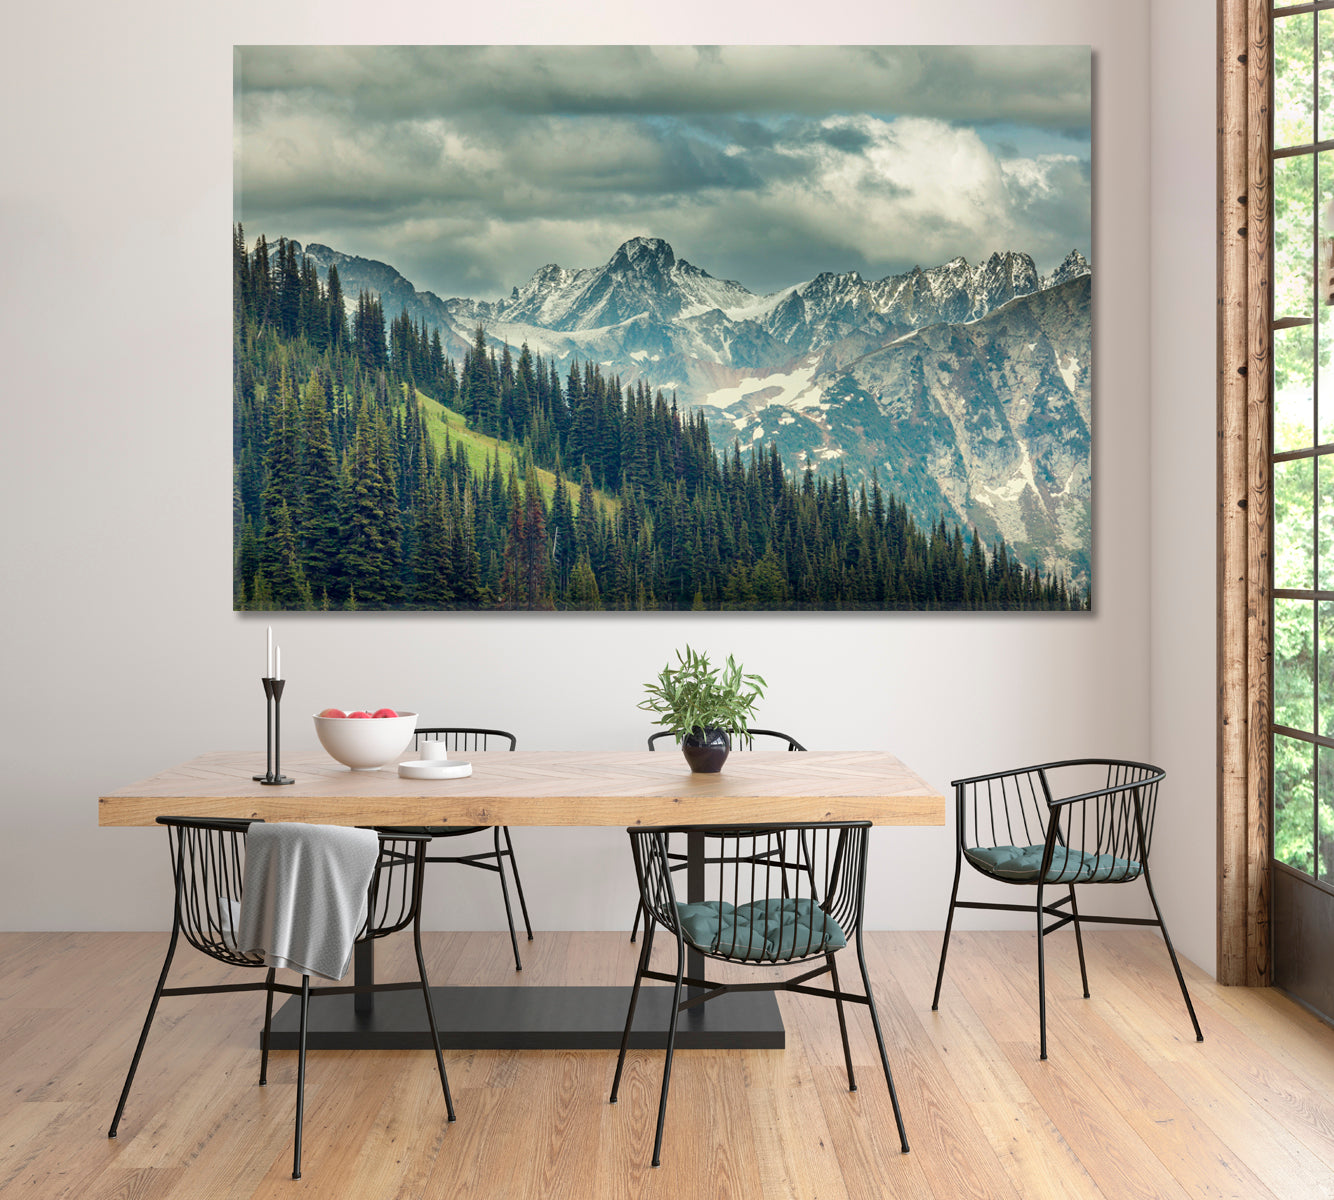 North Cascade Mountain Range Washington USA Canvas Print ArtLexy 1 Panel 24"x16" inches 